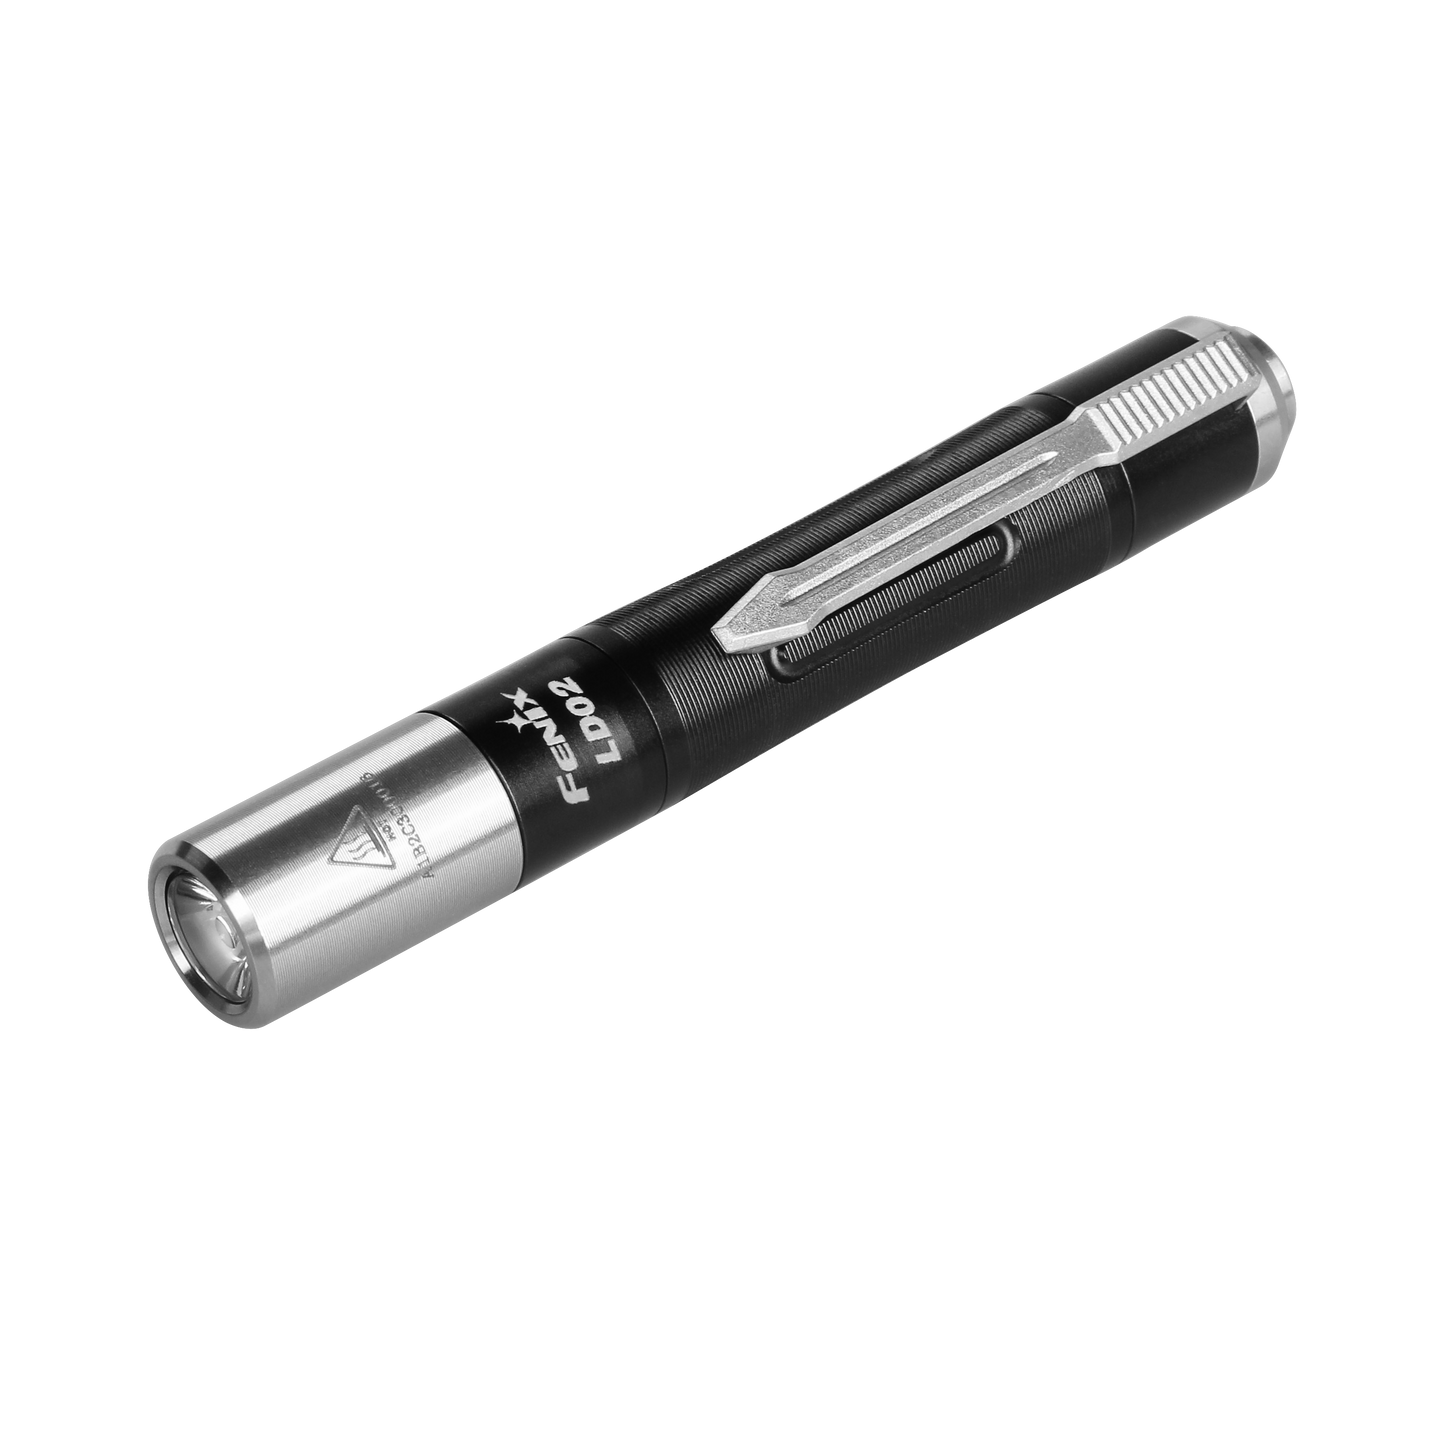 LD02 V2.0 LED Penlight with UV Lighting